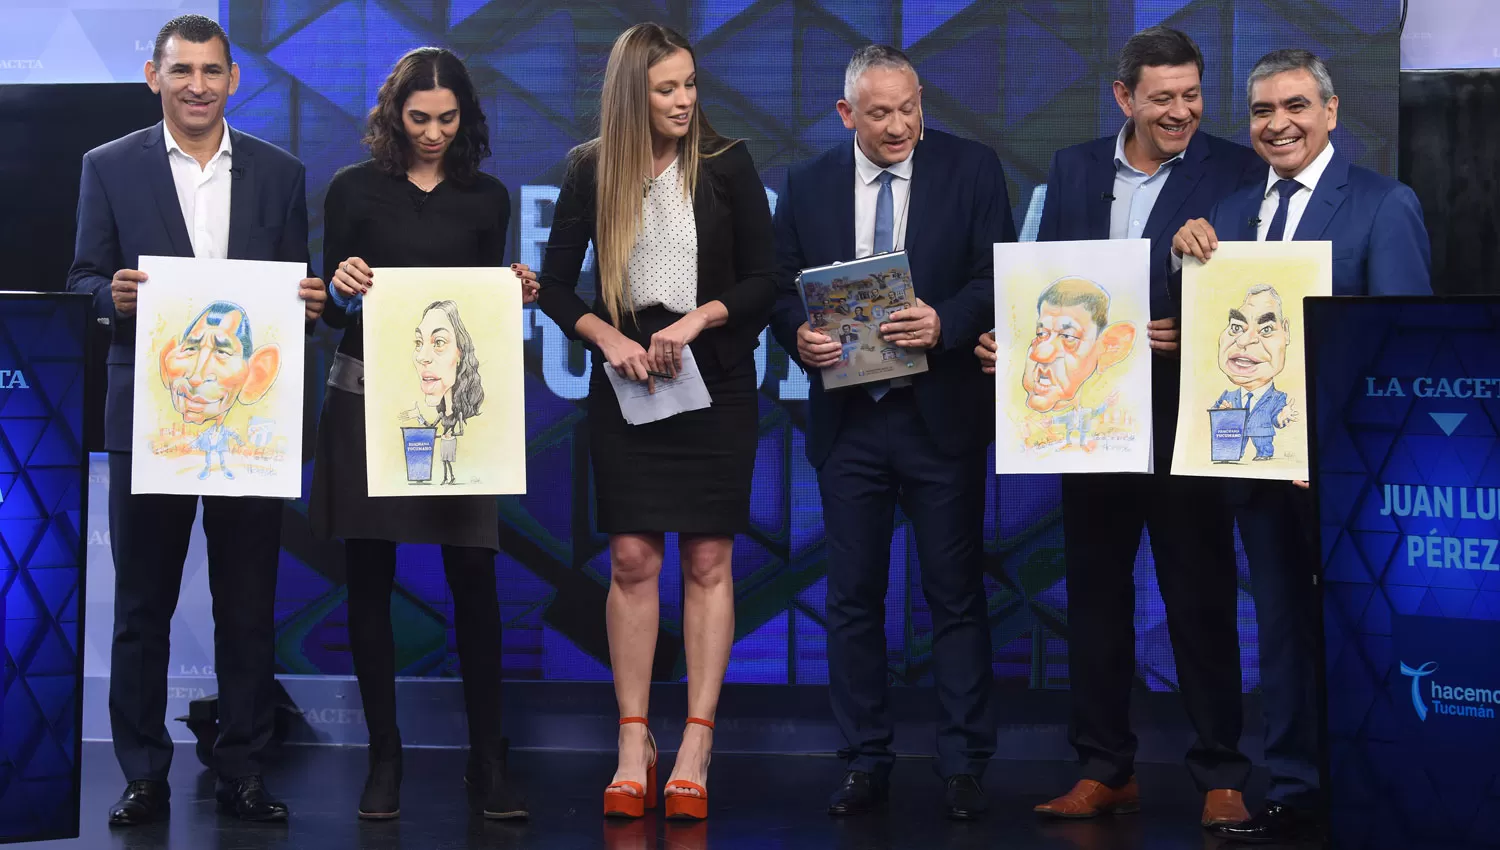 EL FINAL. Leito, Pecci, Pérez y Alfaro exhiben las caricaturas realizadas por Ricardo Heredia y Héctor Palacios. Acompañan Servetto y van Mameren.